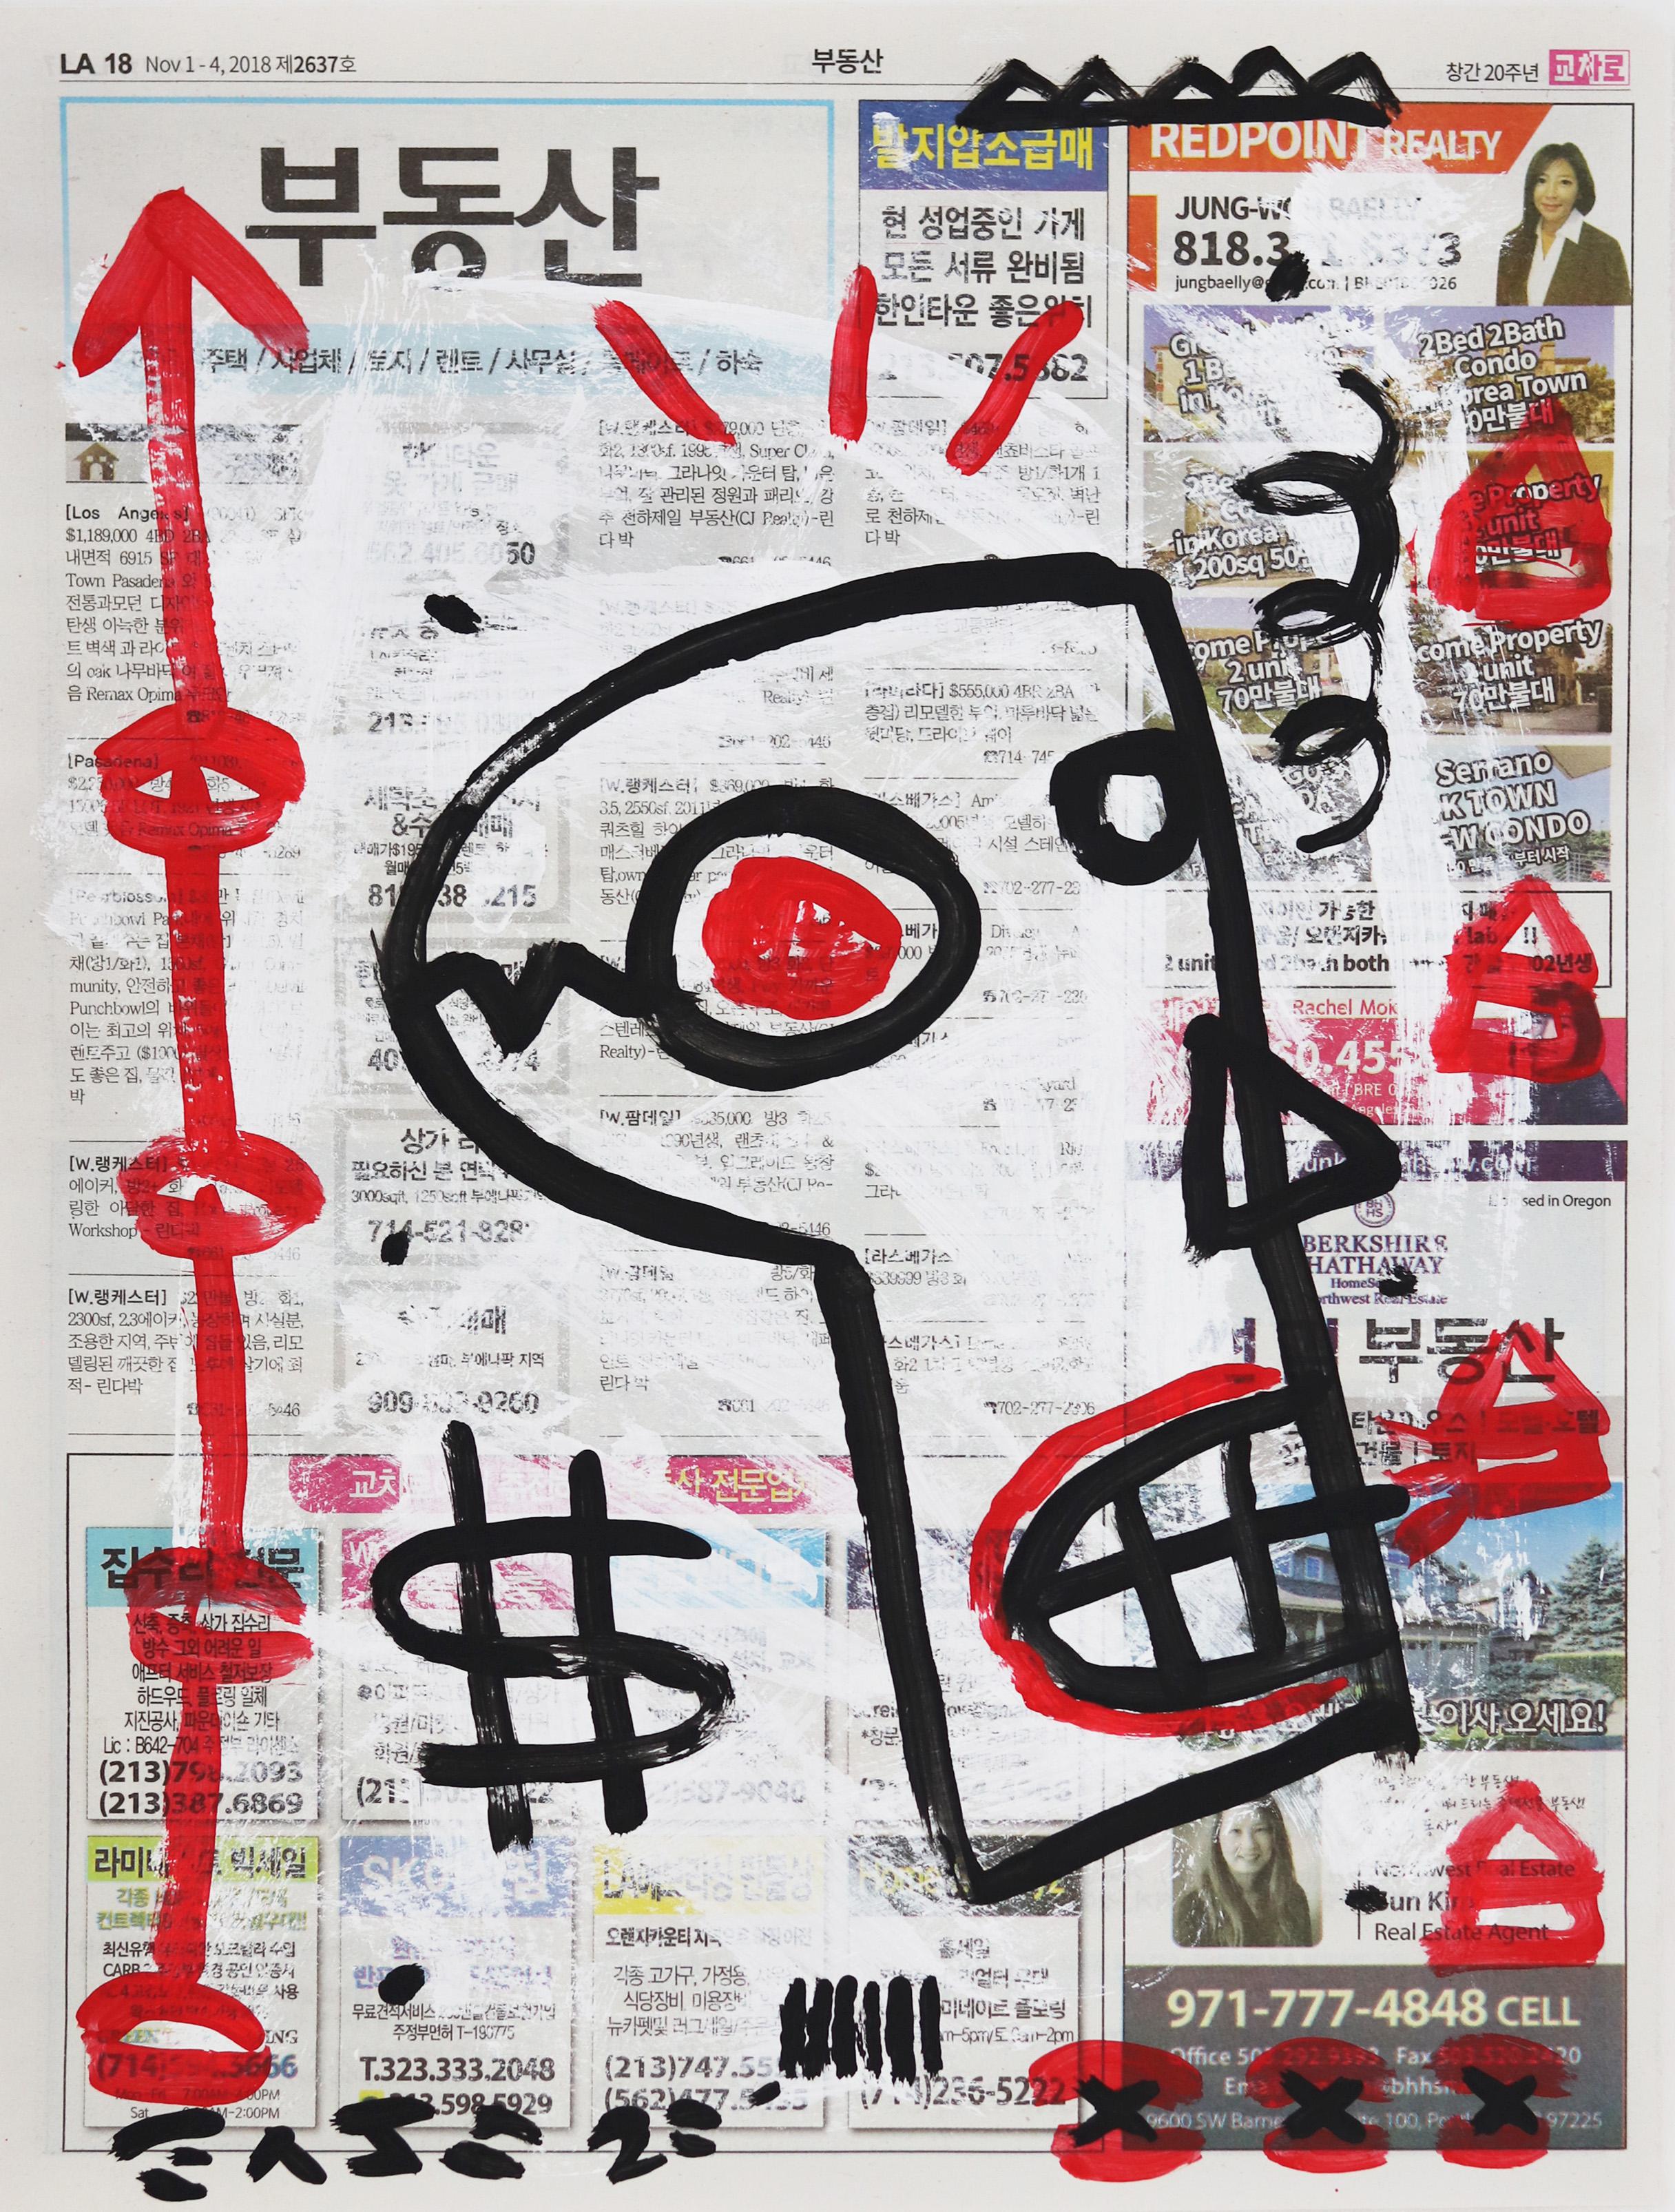 Money On The Mind – Original Schwarz-Weiß-Street-Kunst auf Zeitungspapier